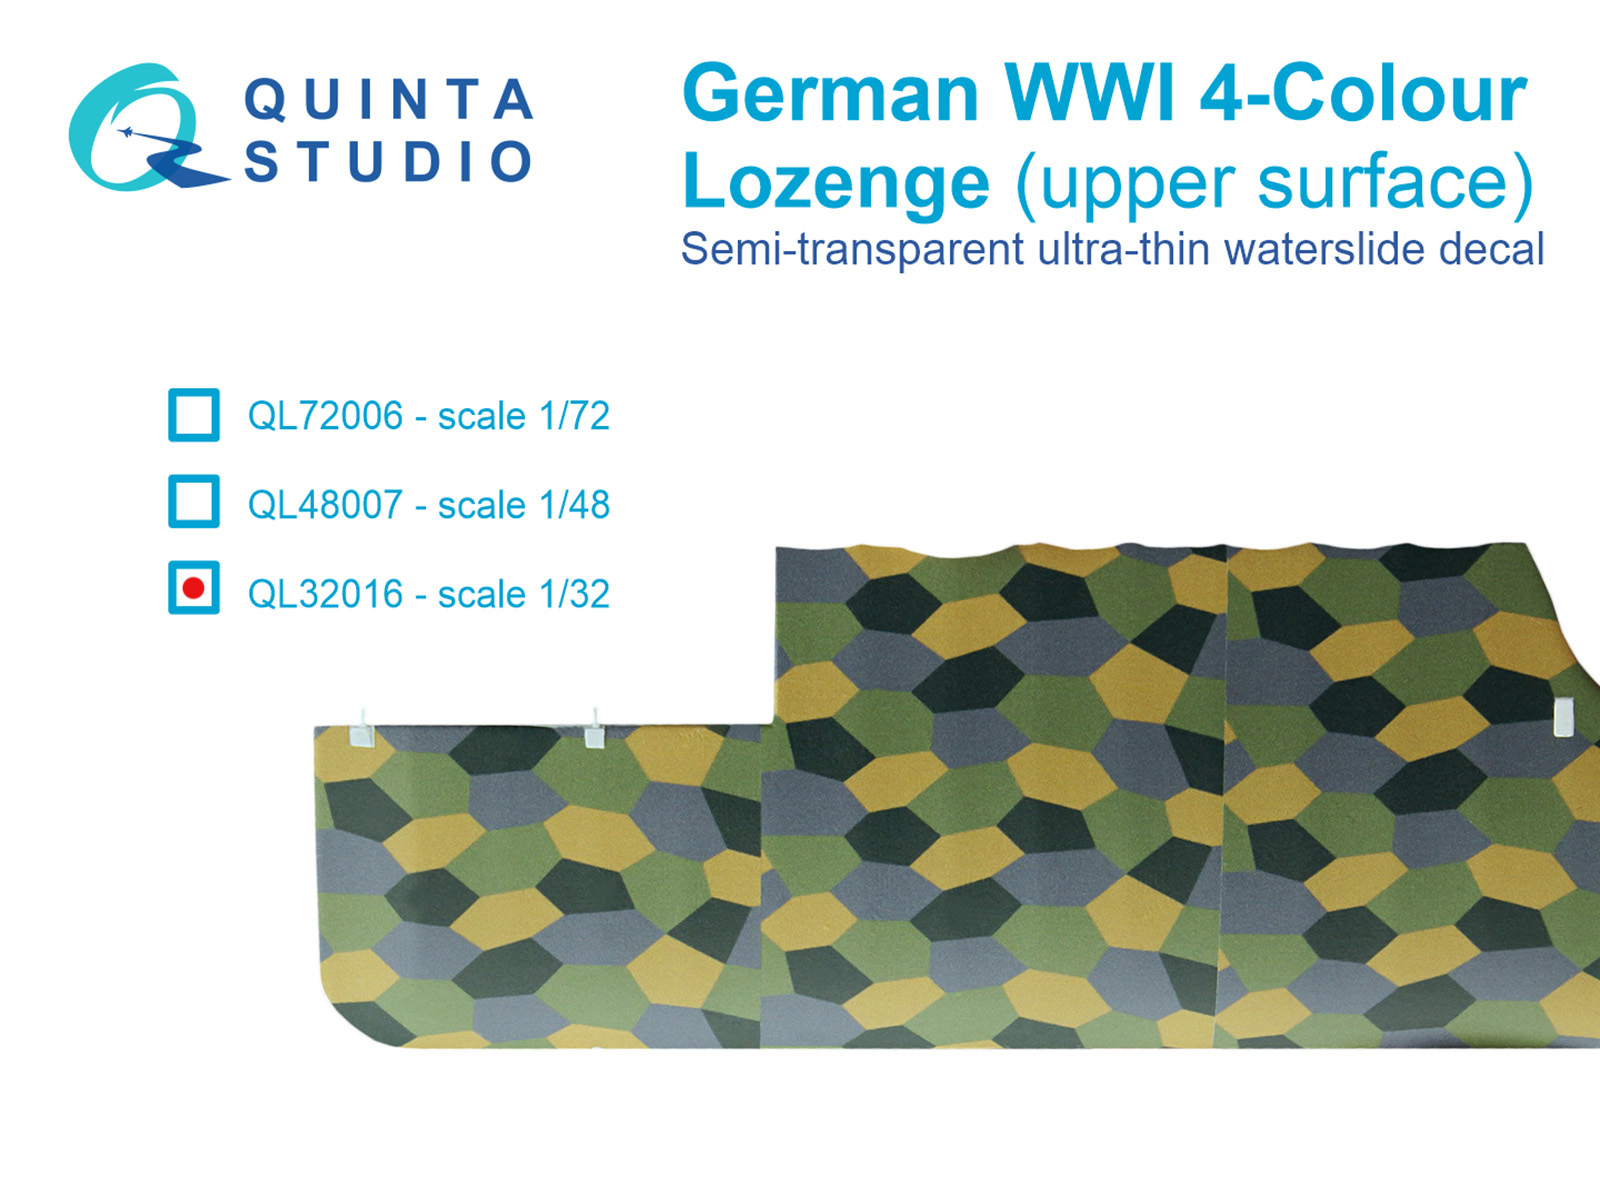 QL32016  декали  Германский WWI 4-цветный Лозенг (верхние поверхности)  (1:32)